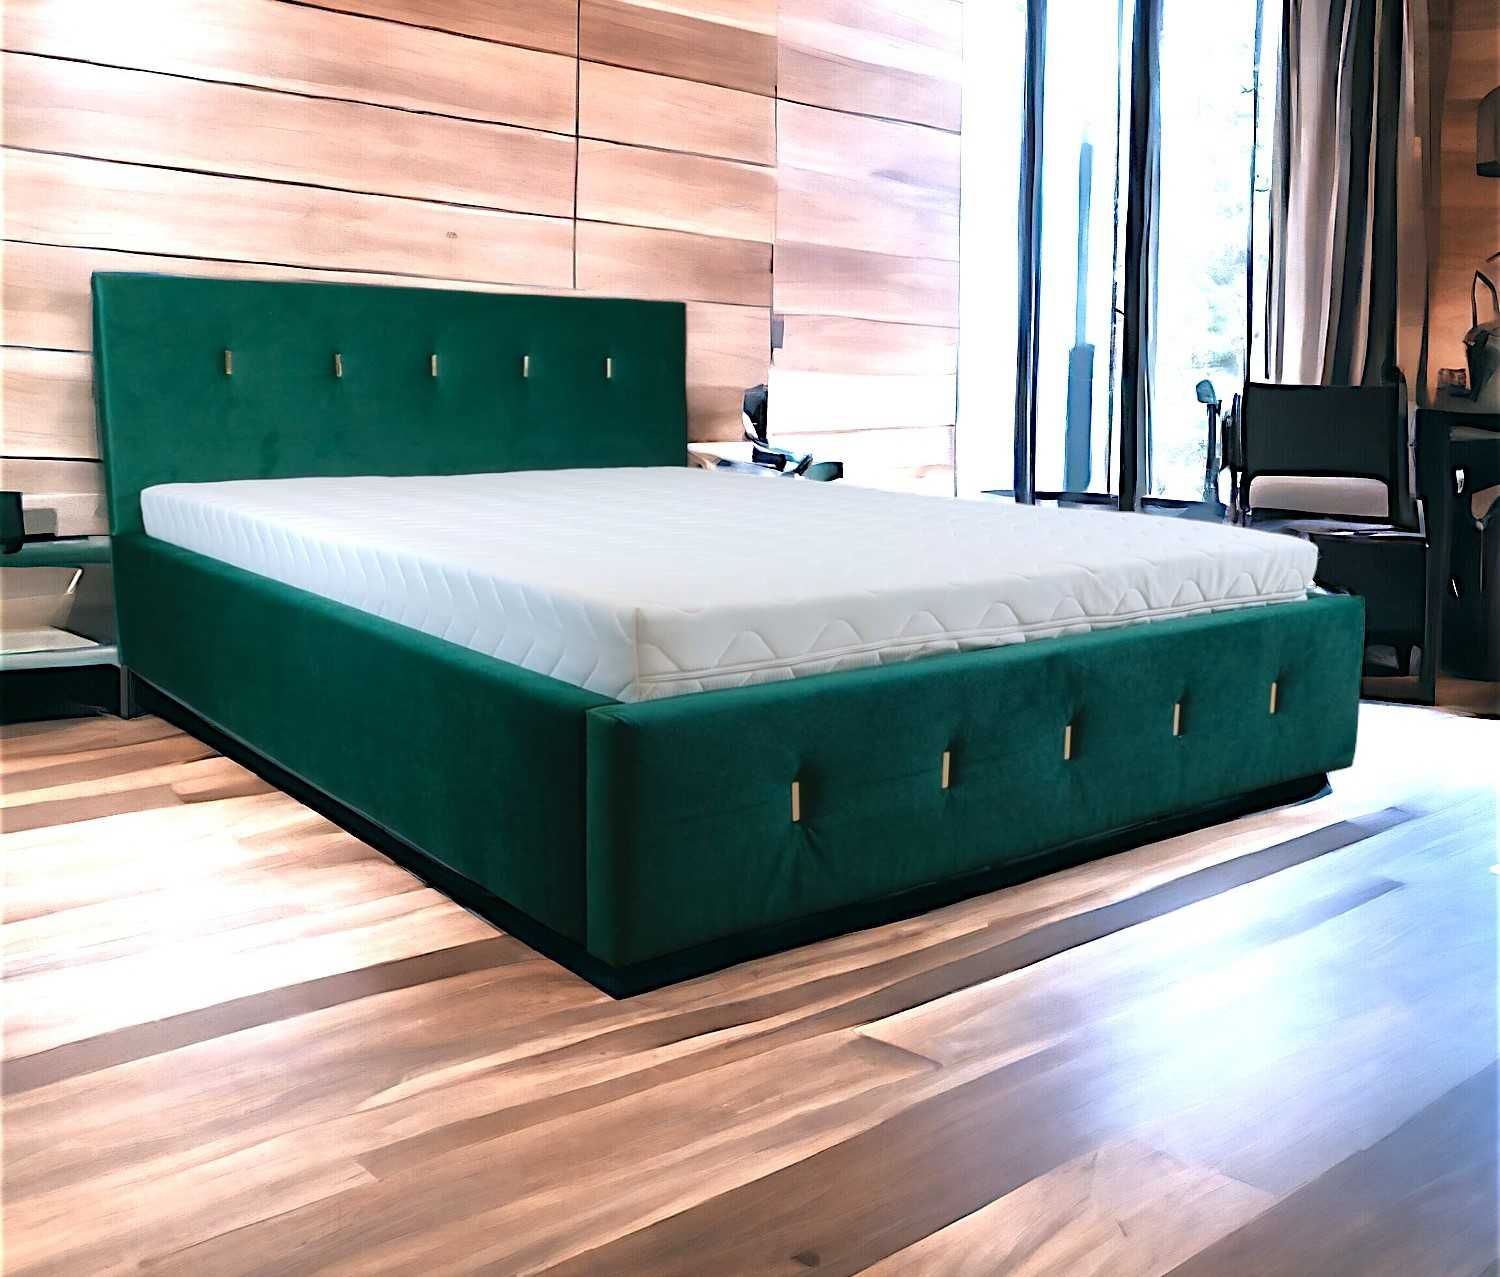 Łóżko, pojemnik MATERAC GRATIS Producent 120,140,160 kolory